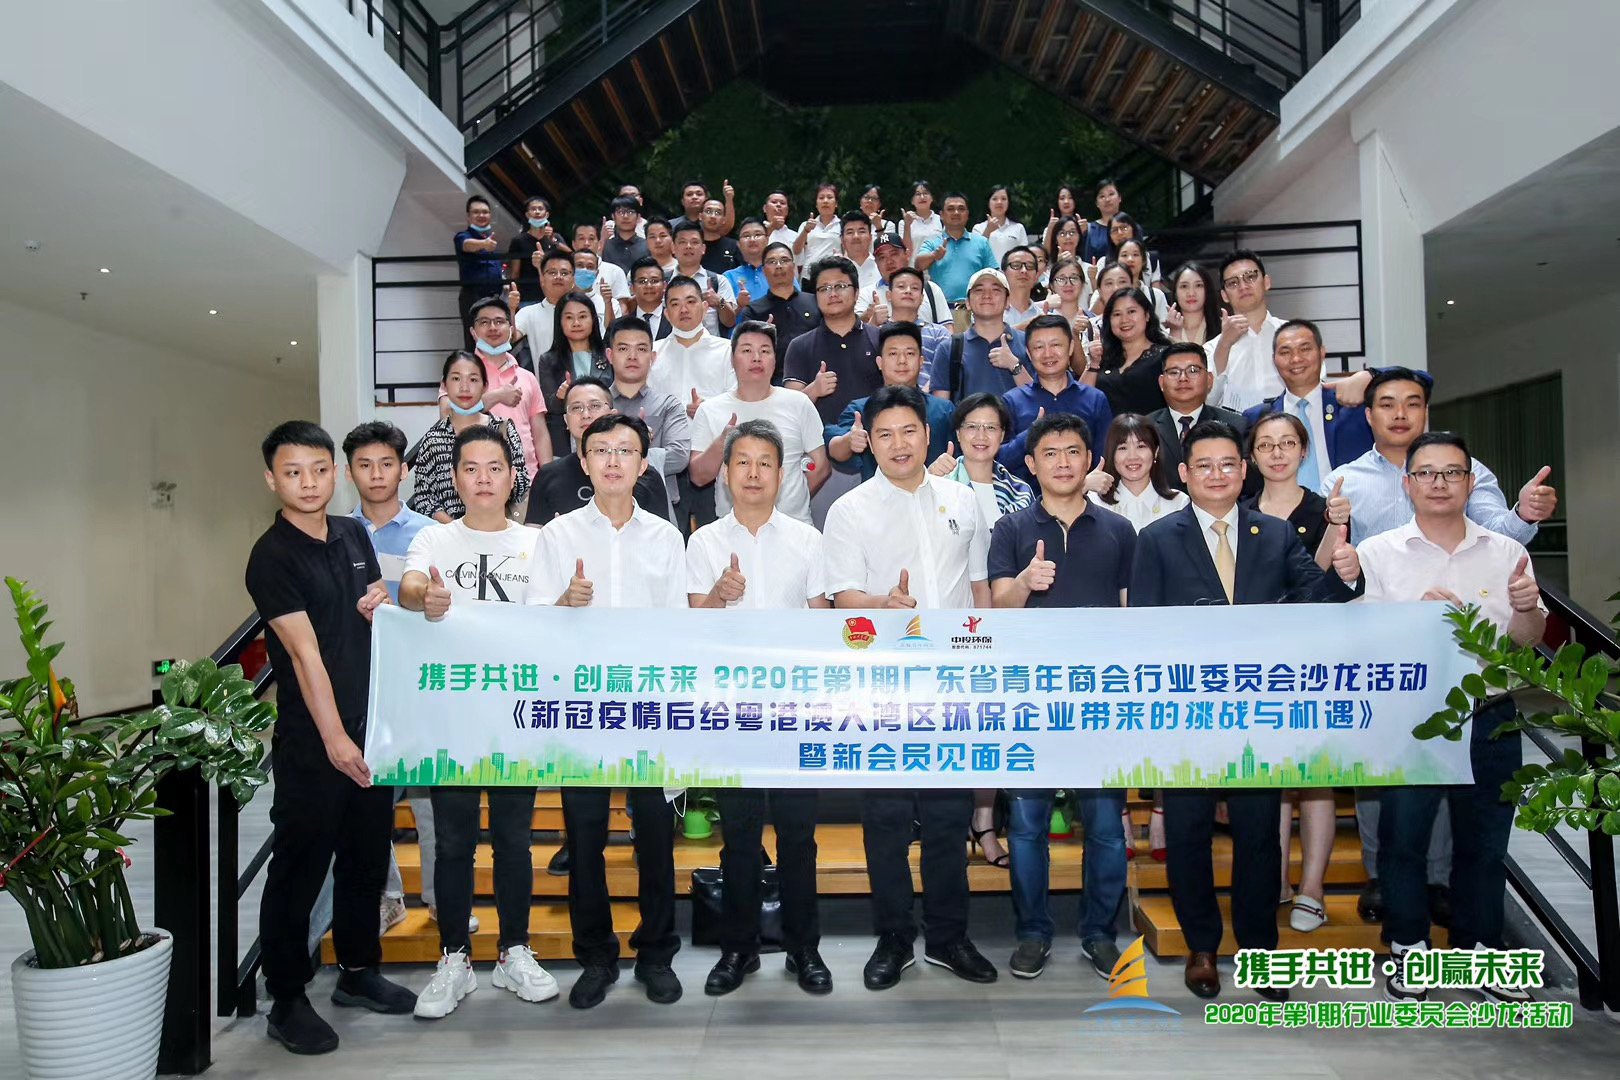 广东青年商会行业沙龙活动在穗举行 加强政企沟通